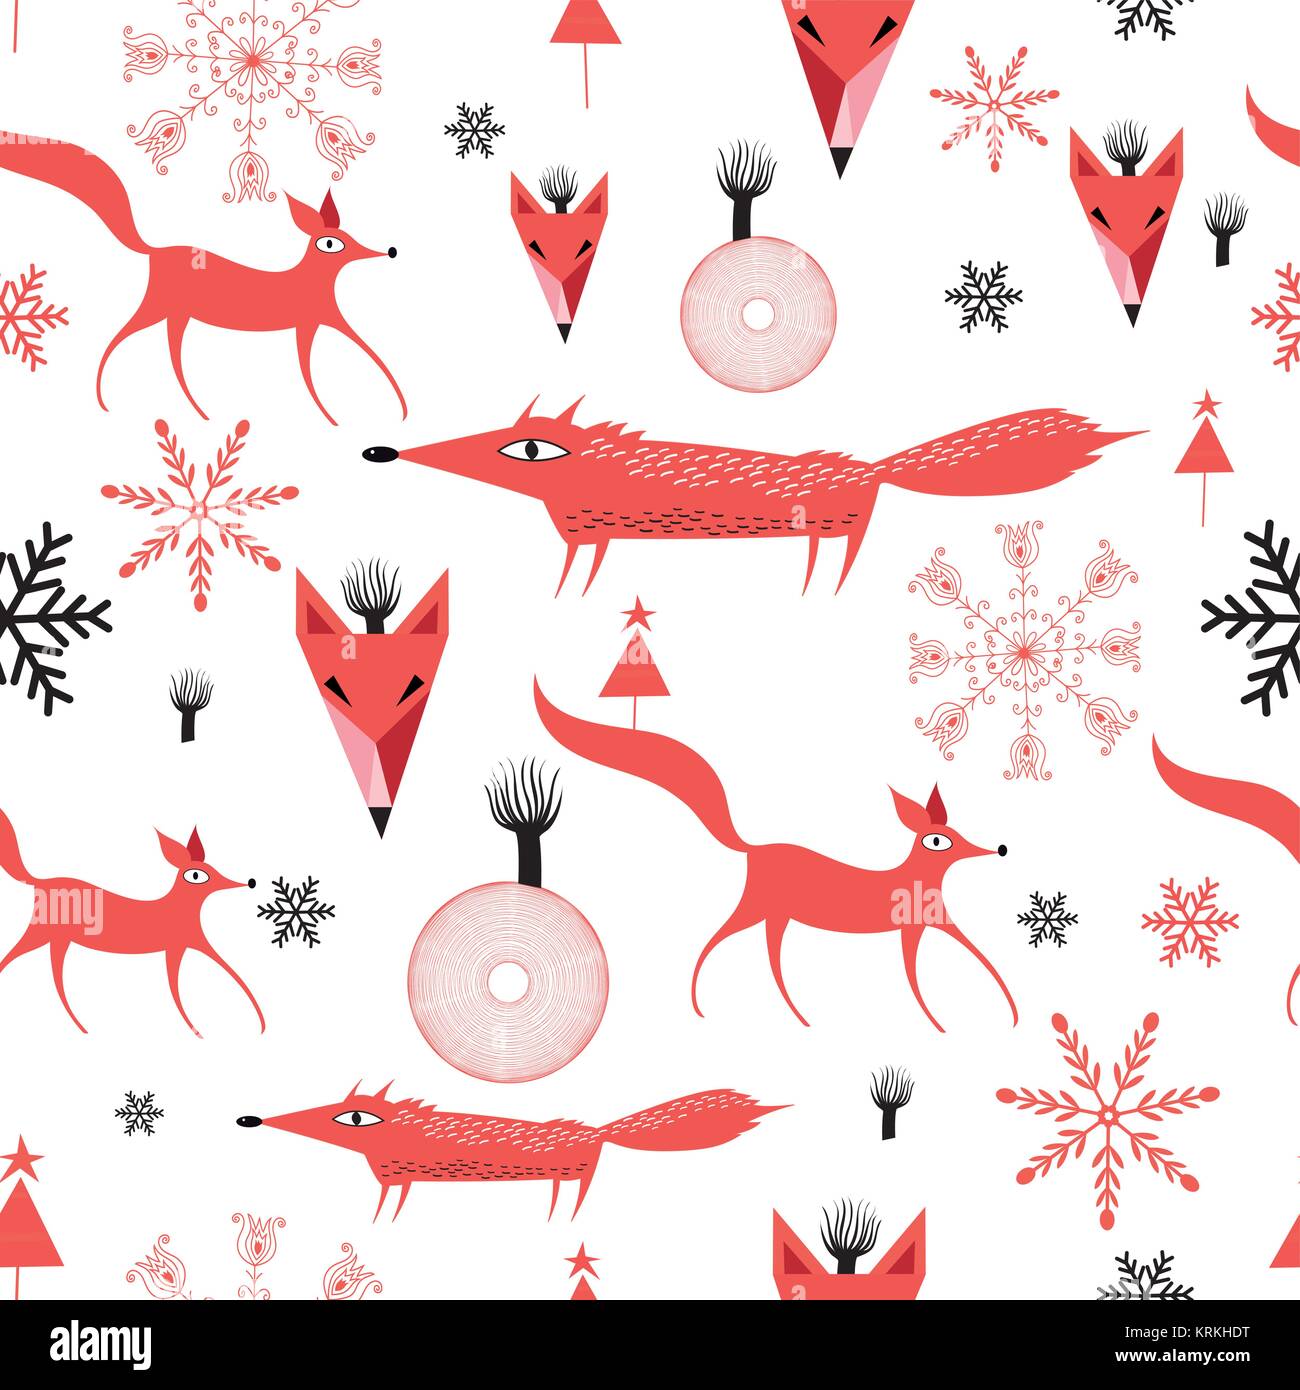 Neue Jahre Muster der Red Foxes auf weißem Hintergrund mit Schneeflocken Stock Vektor